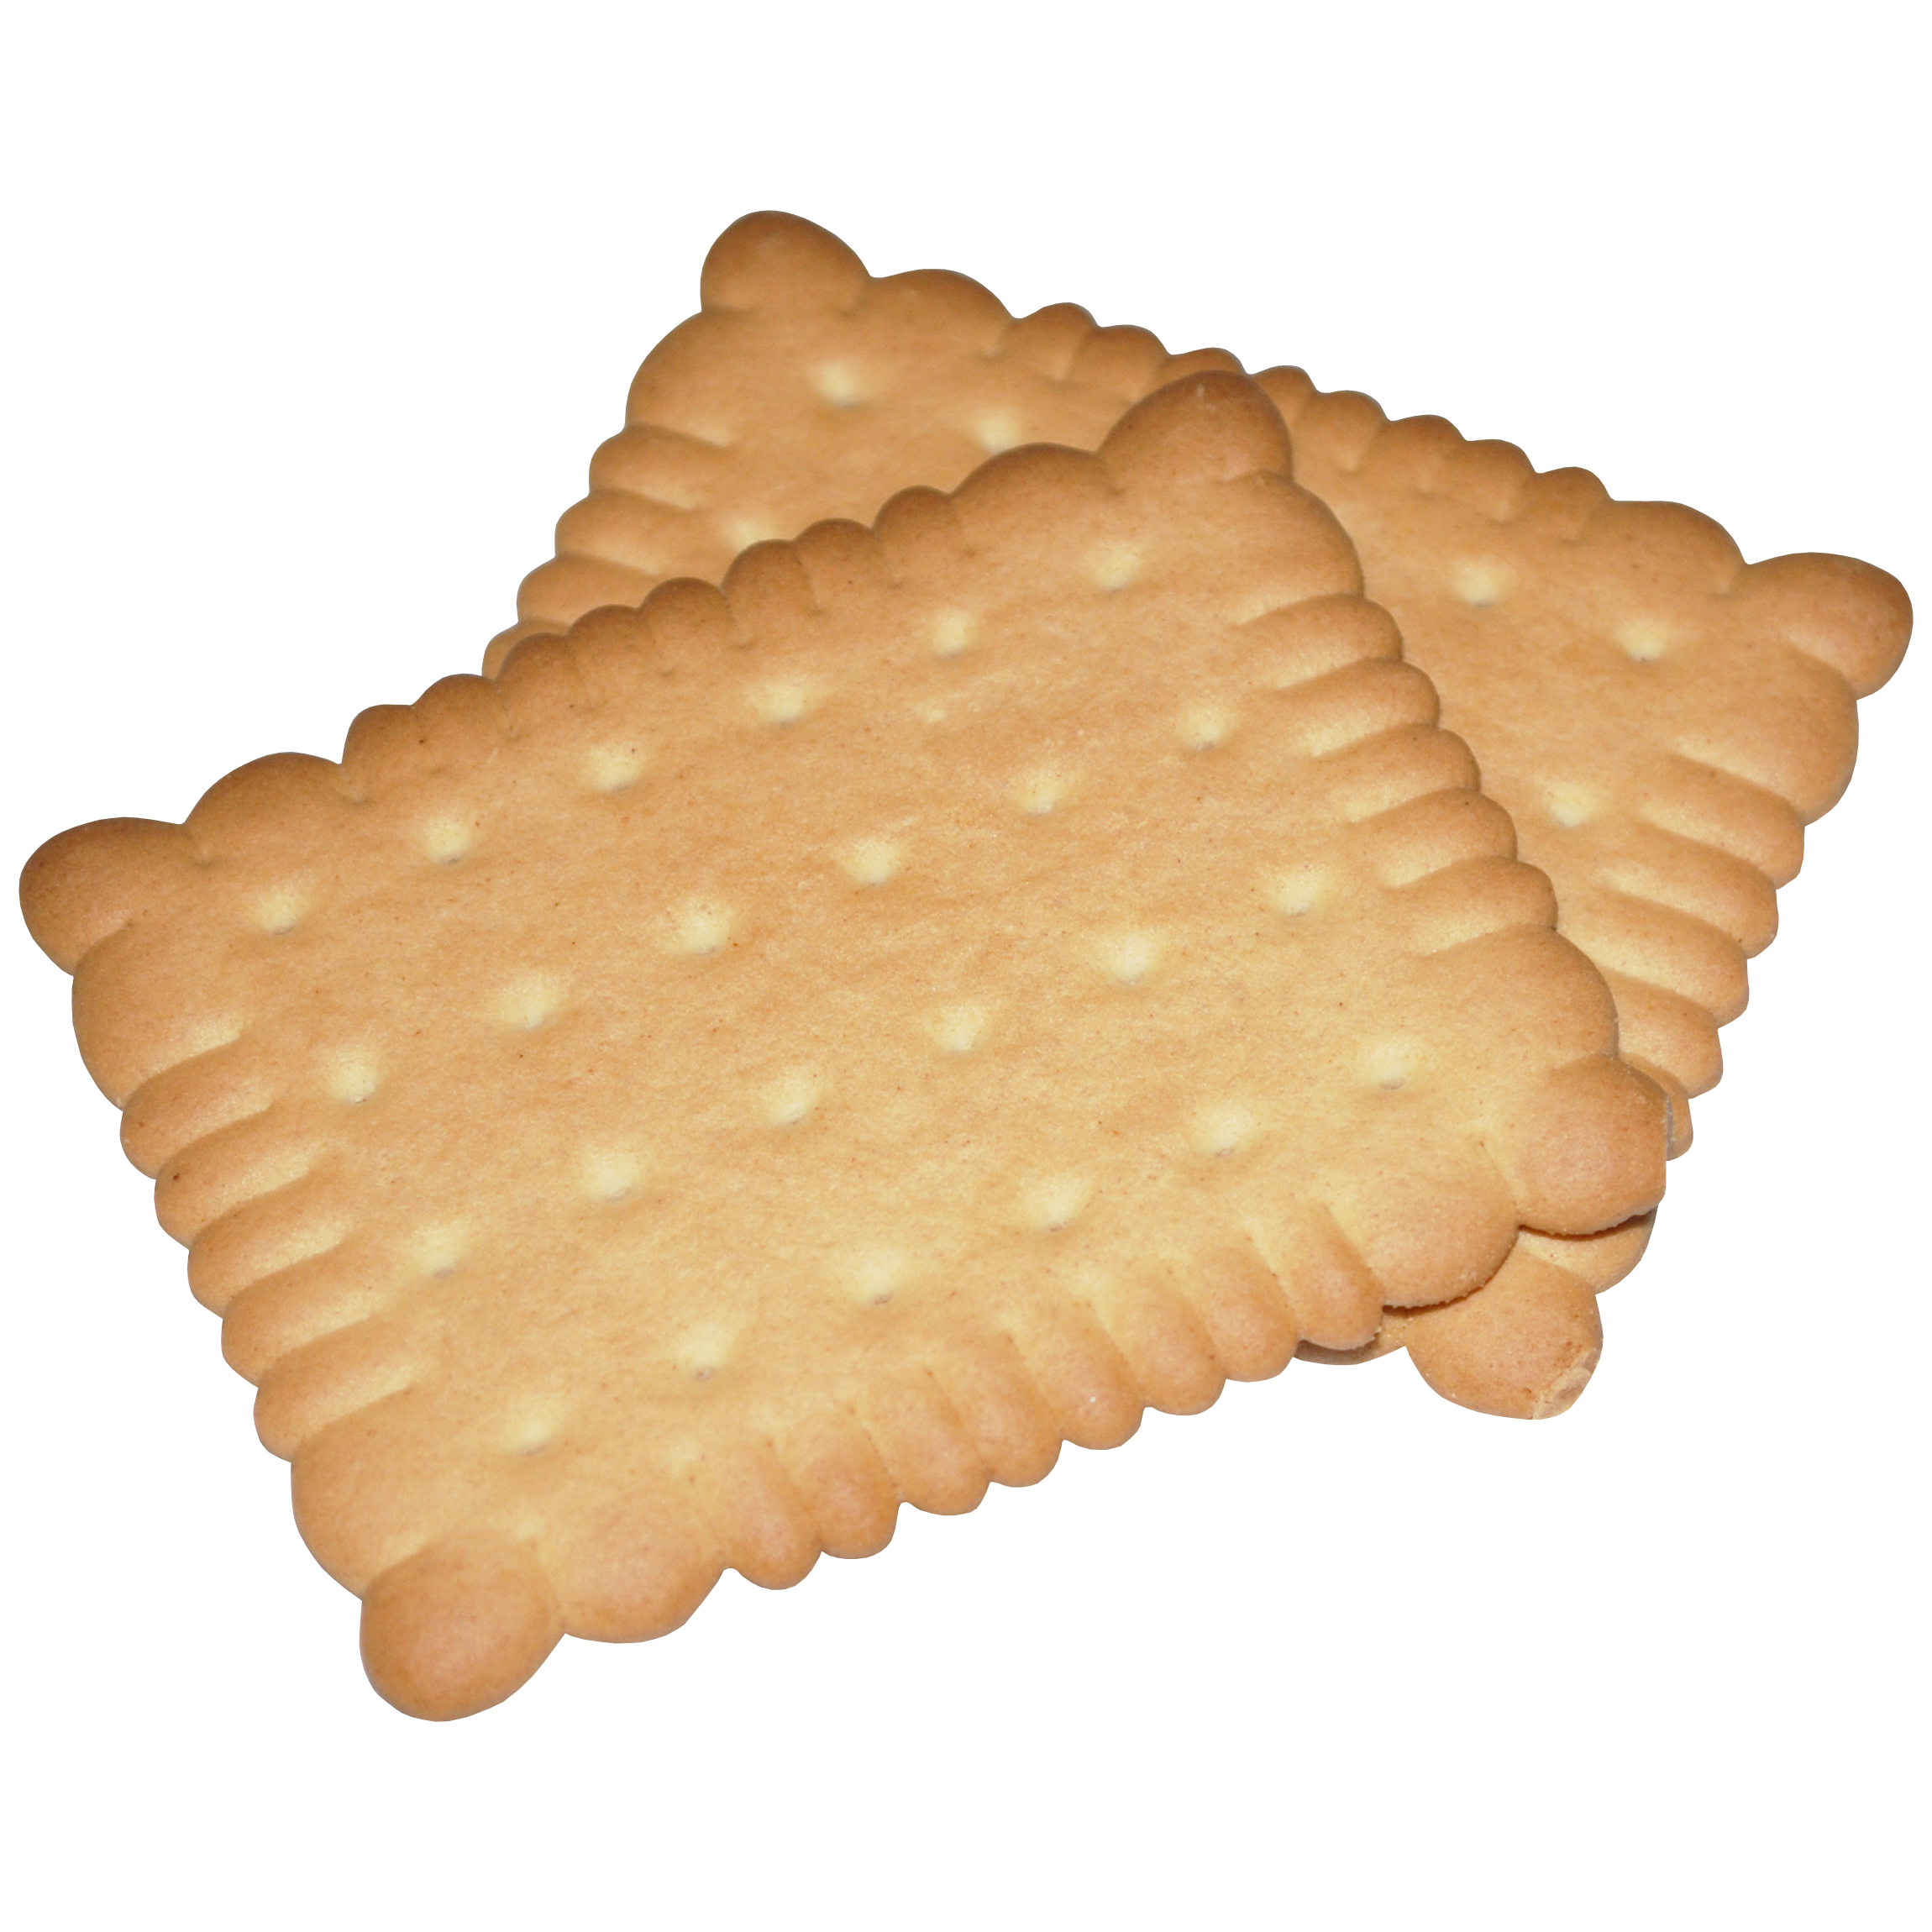 Biscuit Transparent Image